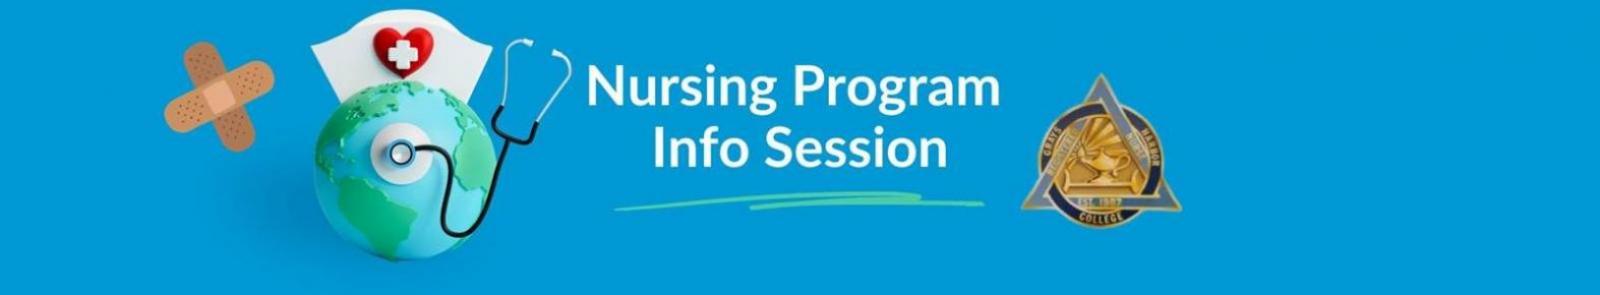 Nursing Program Info Session